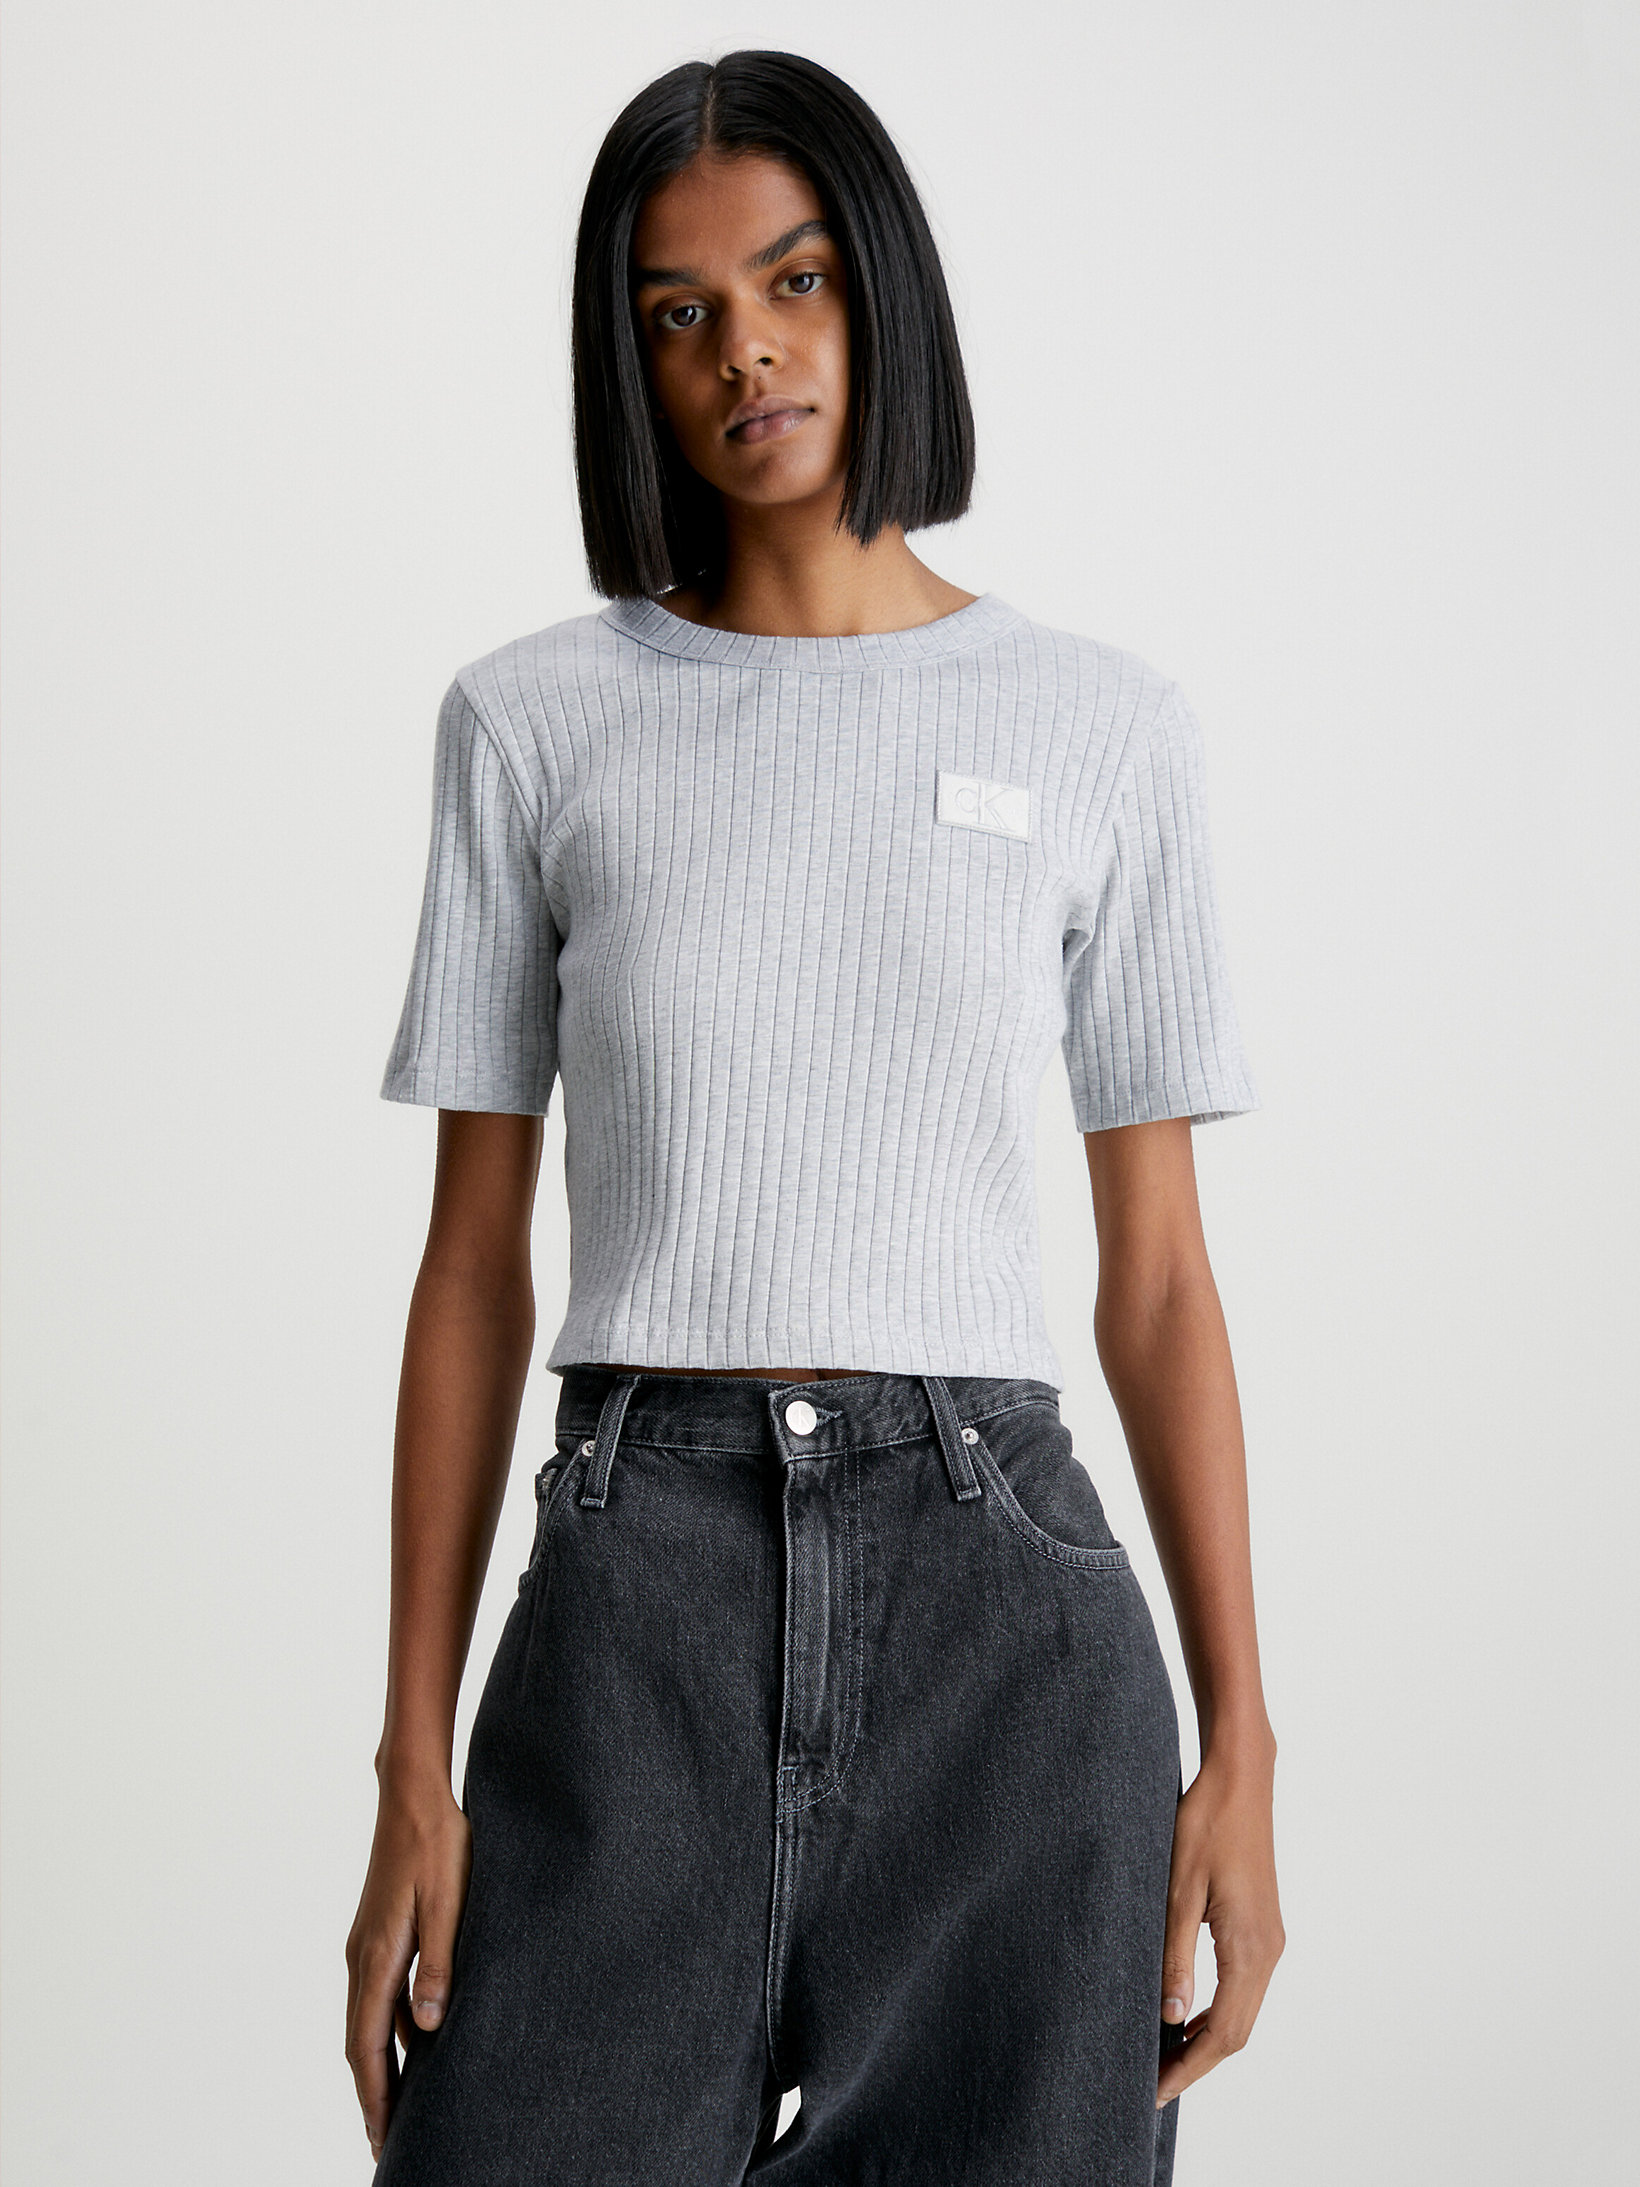 Light Grey Heather > Wąski T-Shirt O Skróconym Fasonie Z Naszywką > undefined Kobiety - Calvin Klein